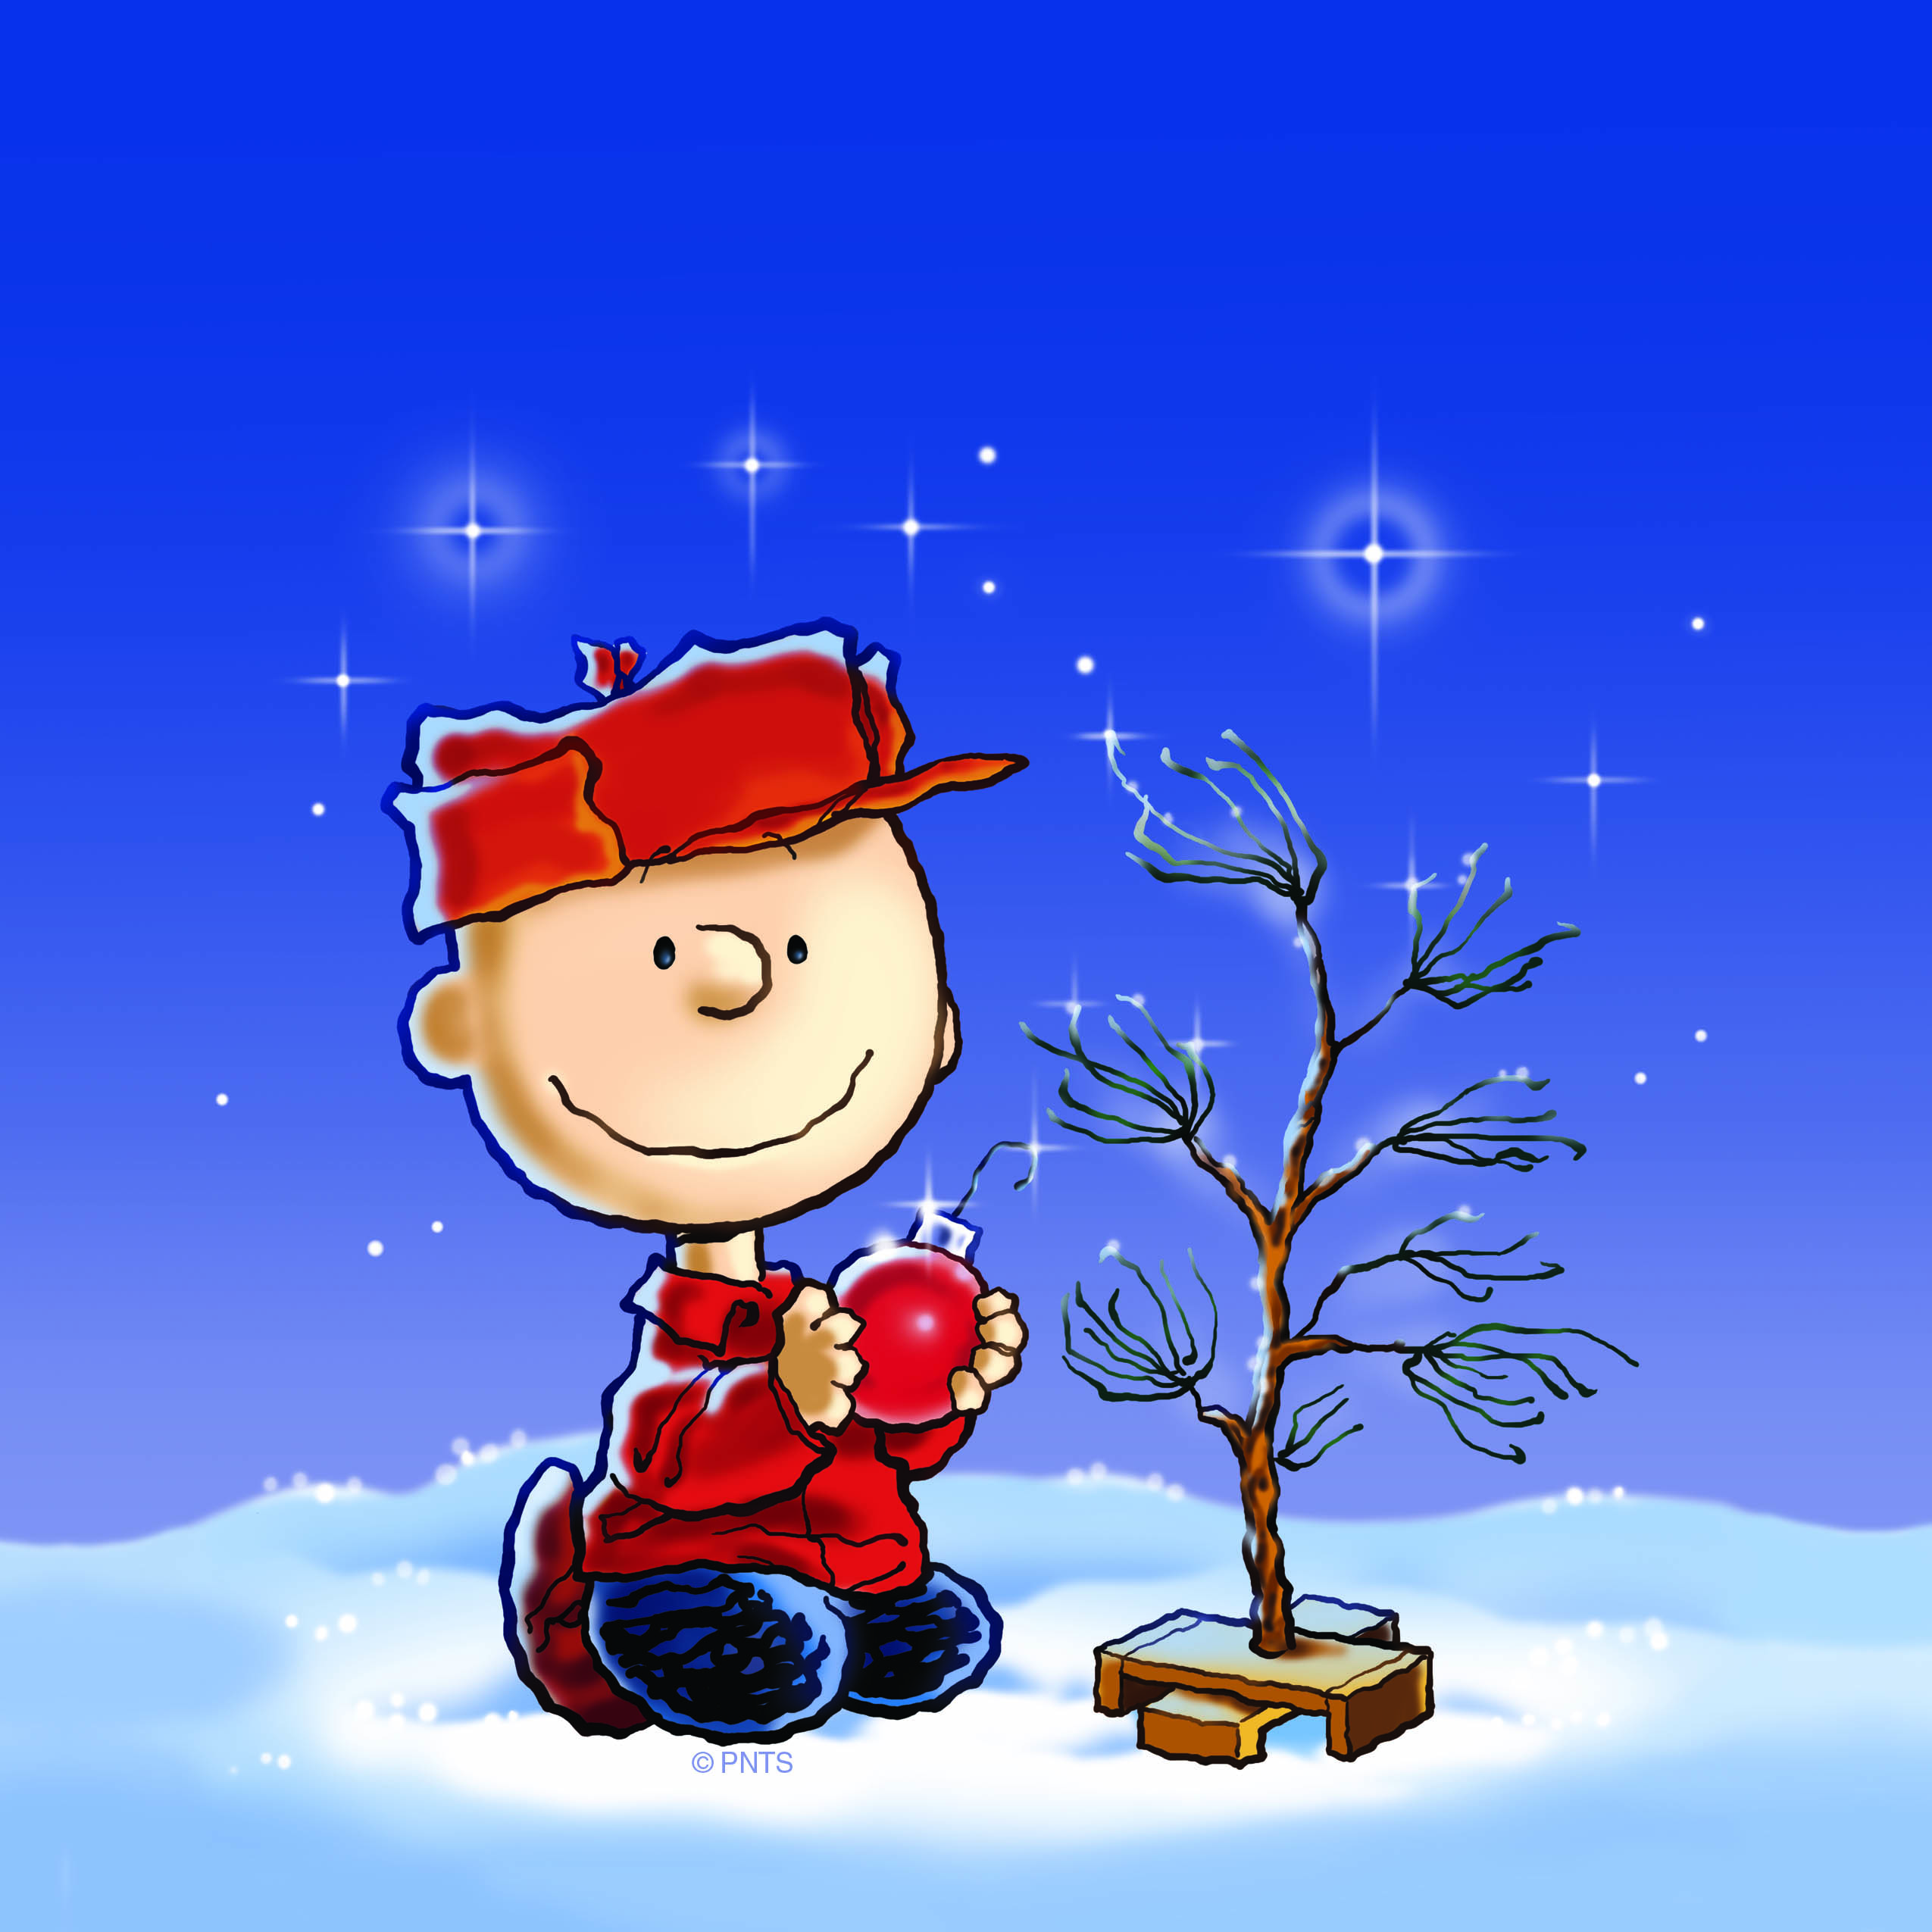 A Charlie Brown Christmas #10